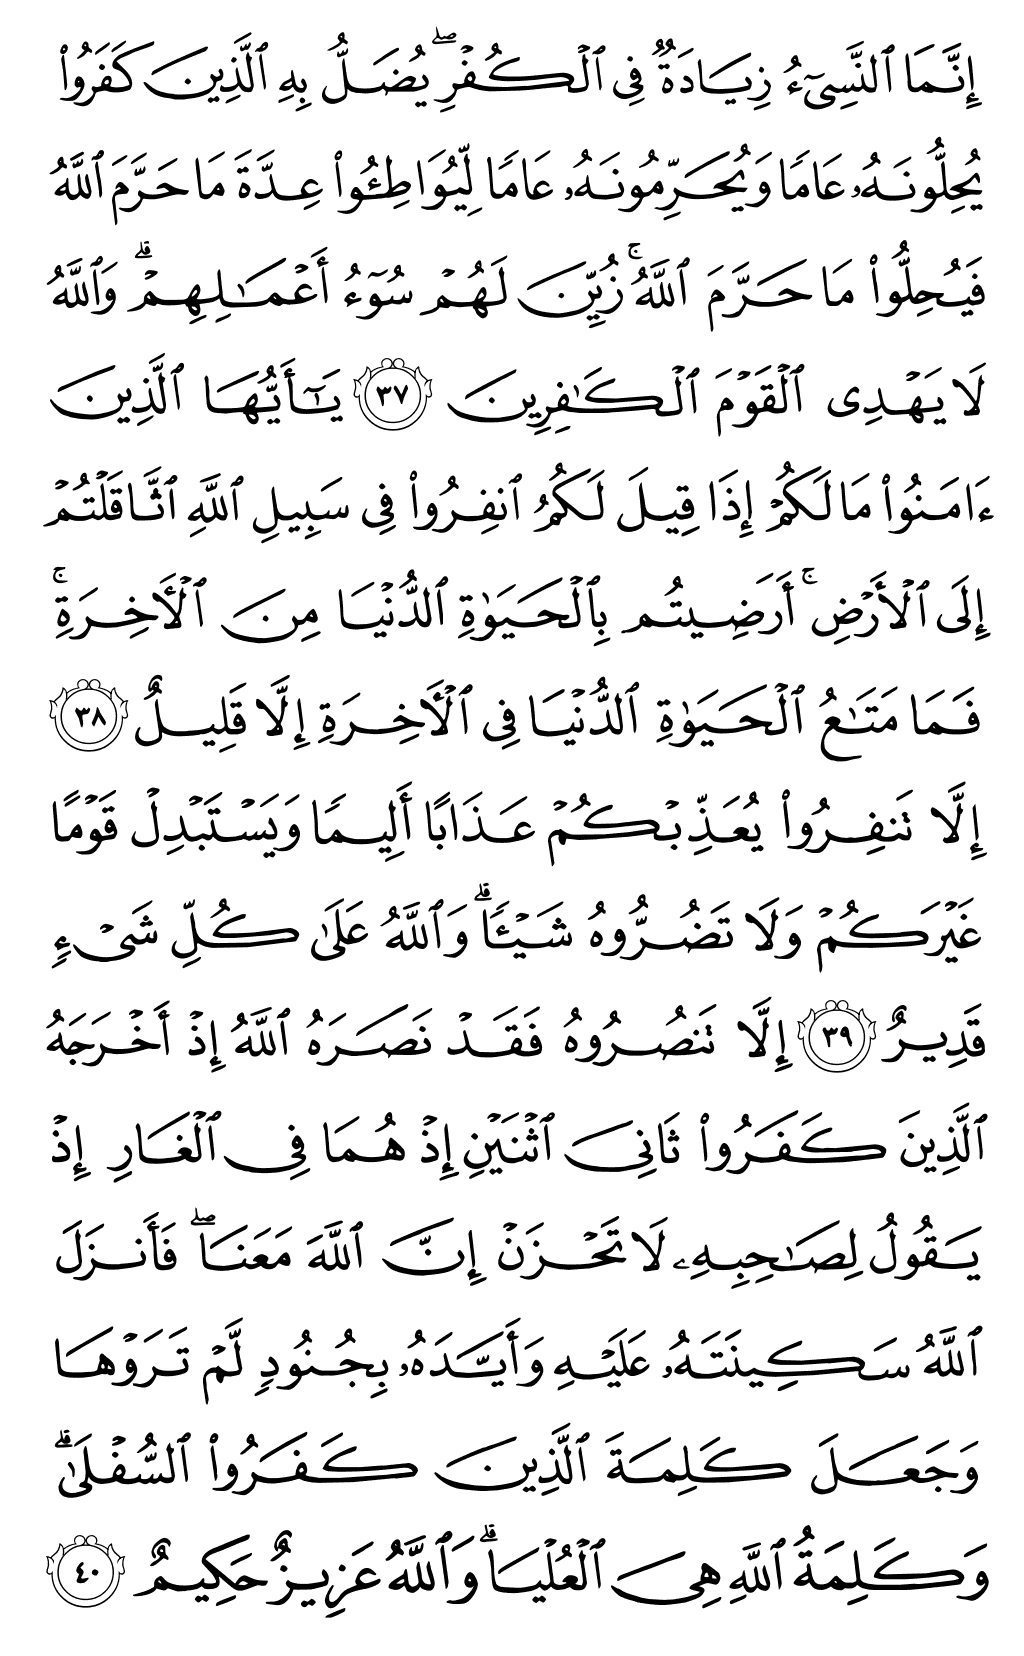 الصفحة رقم 193 من القرآن الكريم